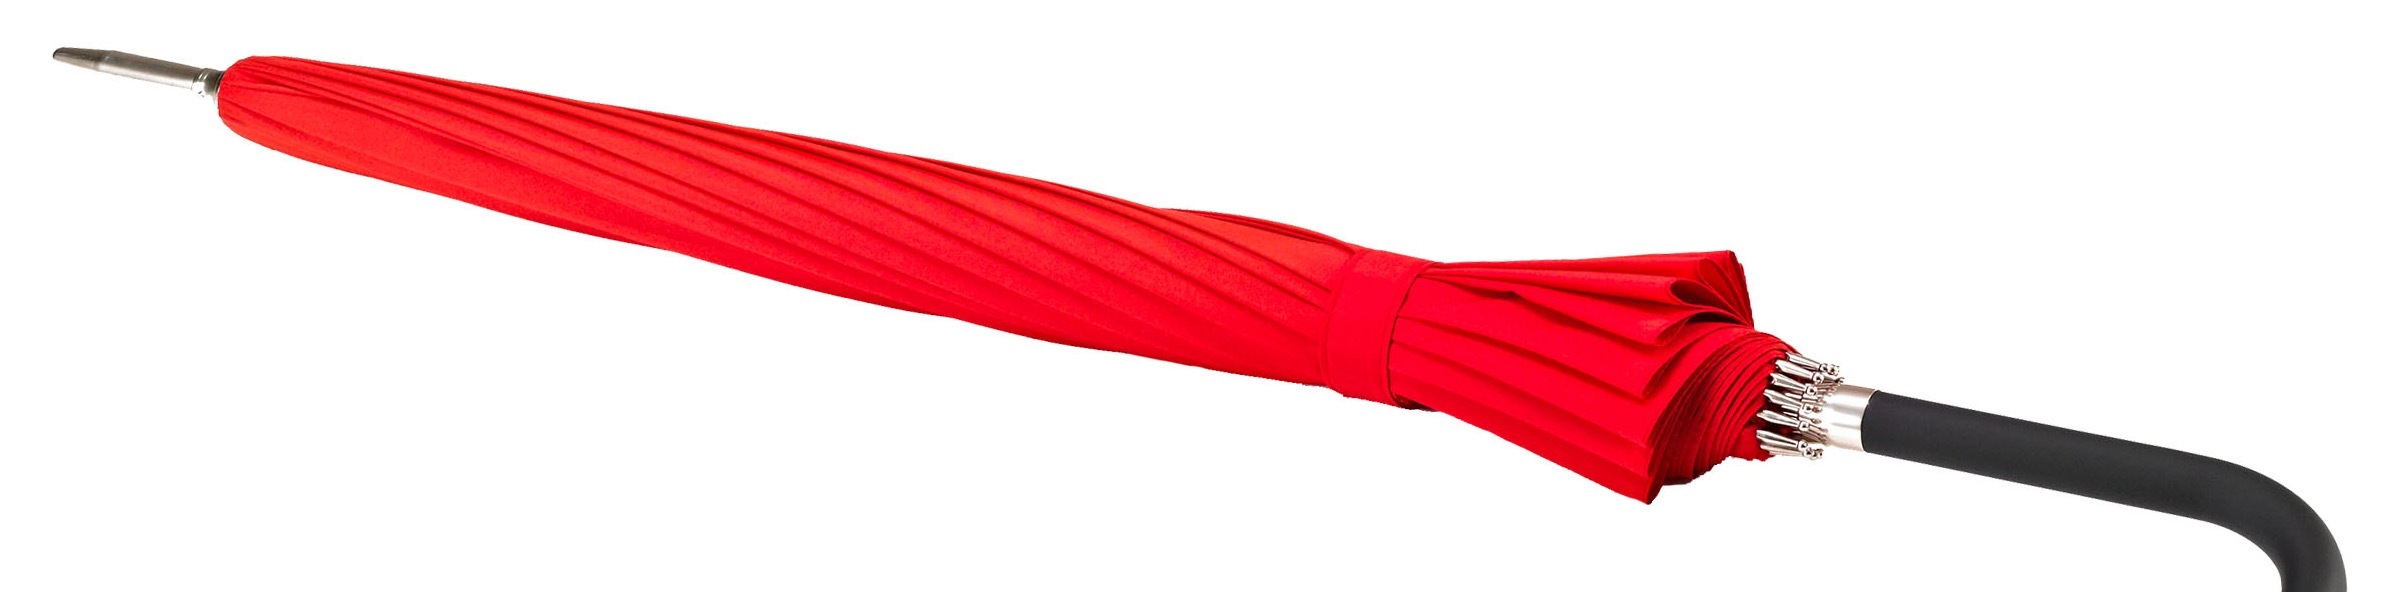 EuroSCHIRM® Stockregenschirm »Metropolitan®, rot«, mit 16 Segmenten und eleganter Dachwölbung